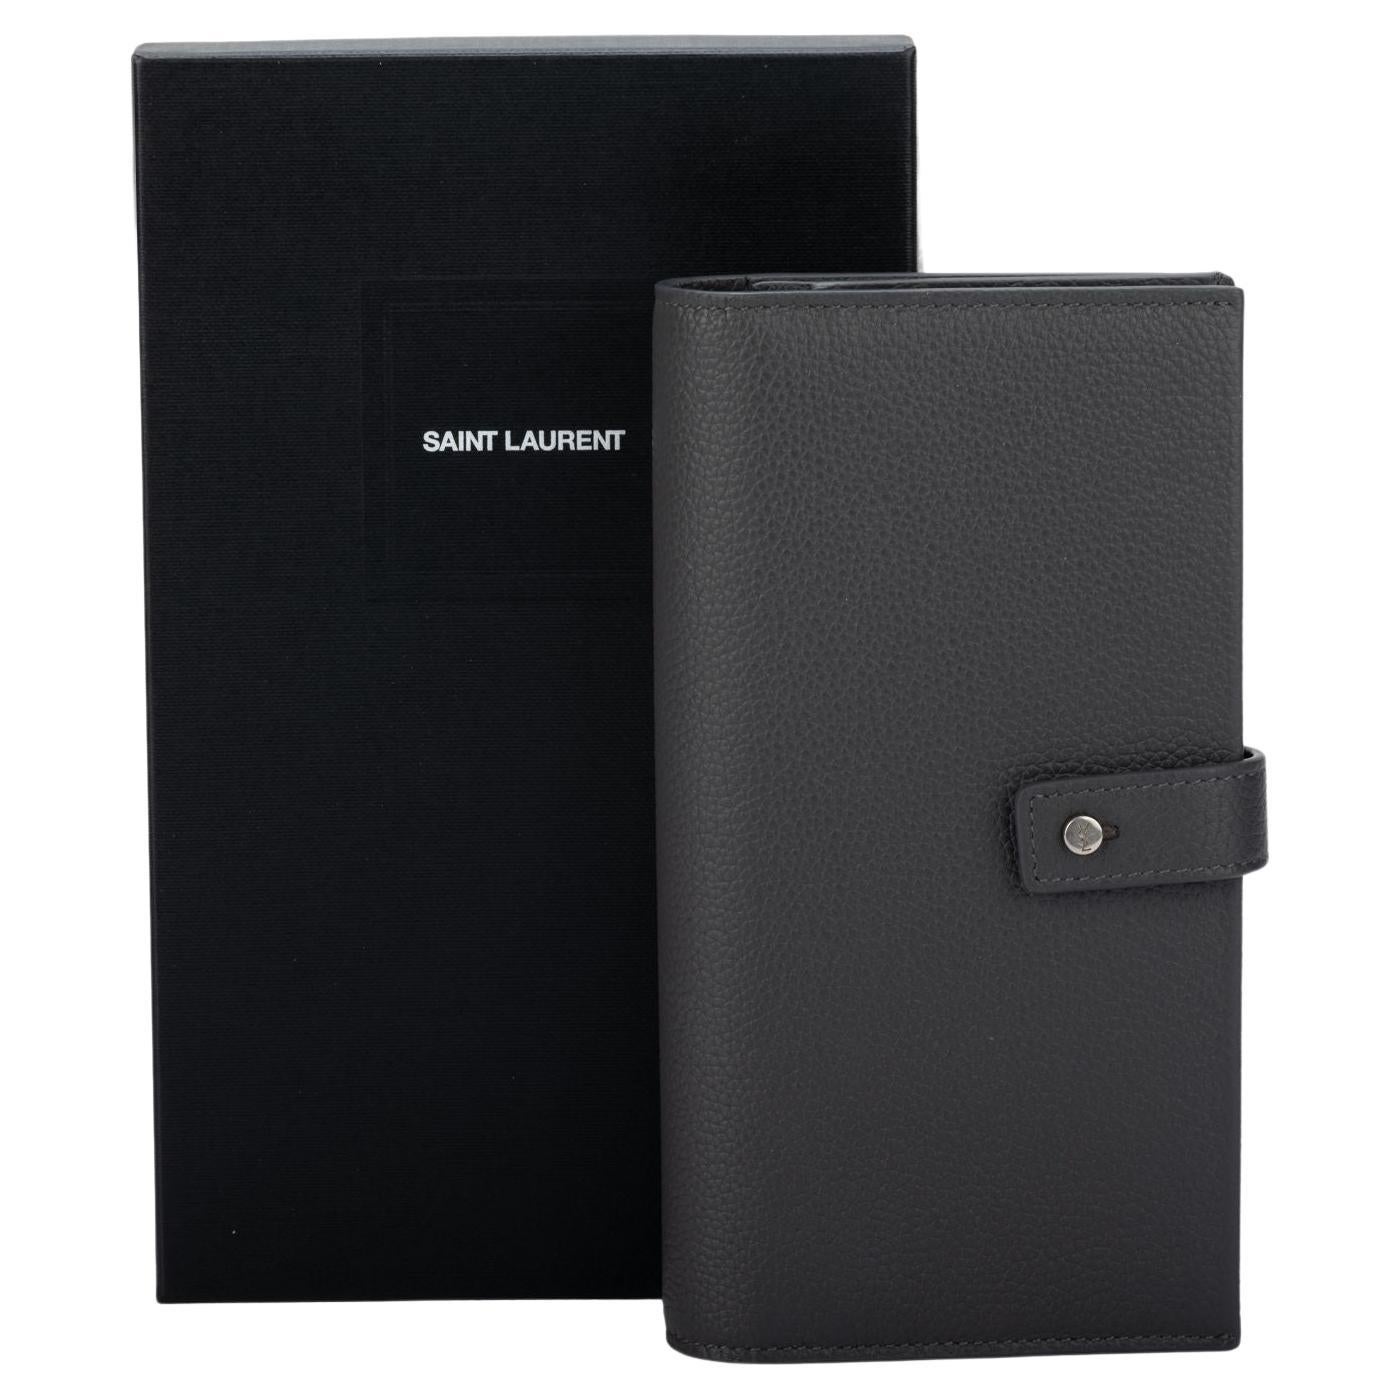 Saint Laurent, Accessories, Saint Laurent Black Leather 6 Key Case Wallet  W Silver Hardware